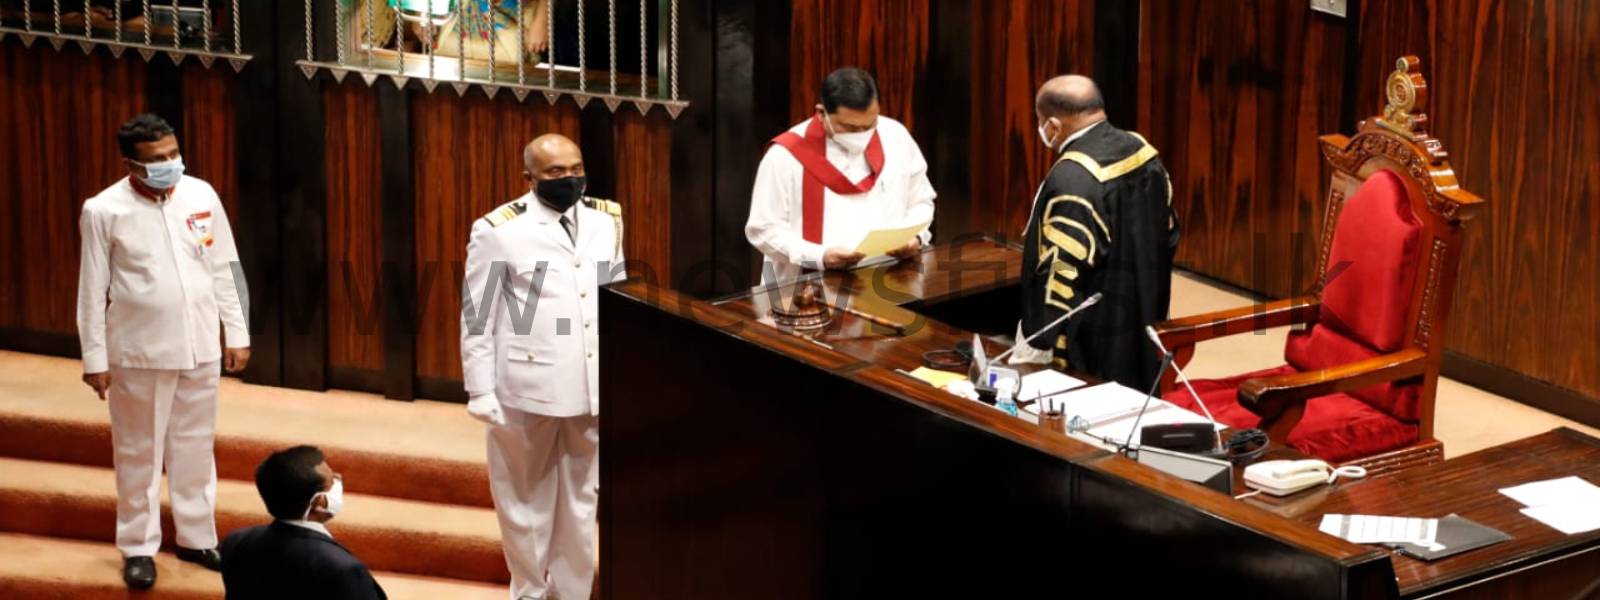 Minister Basil Rajapaksa sworn in as Member of Parliament